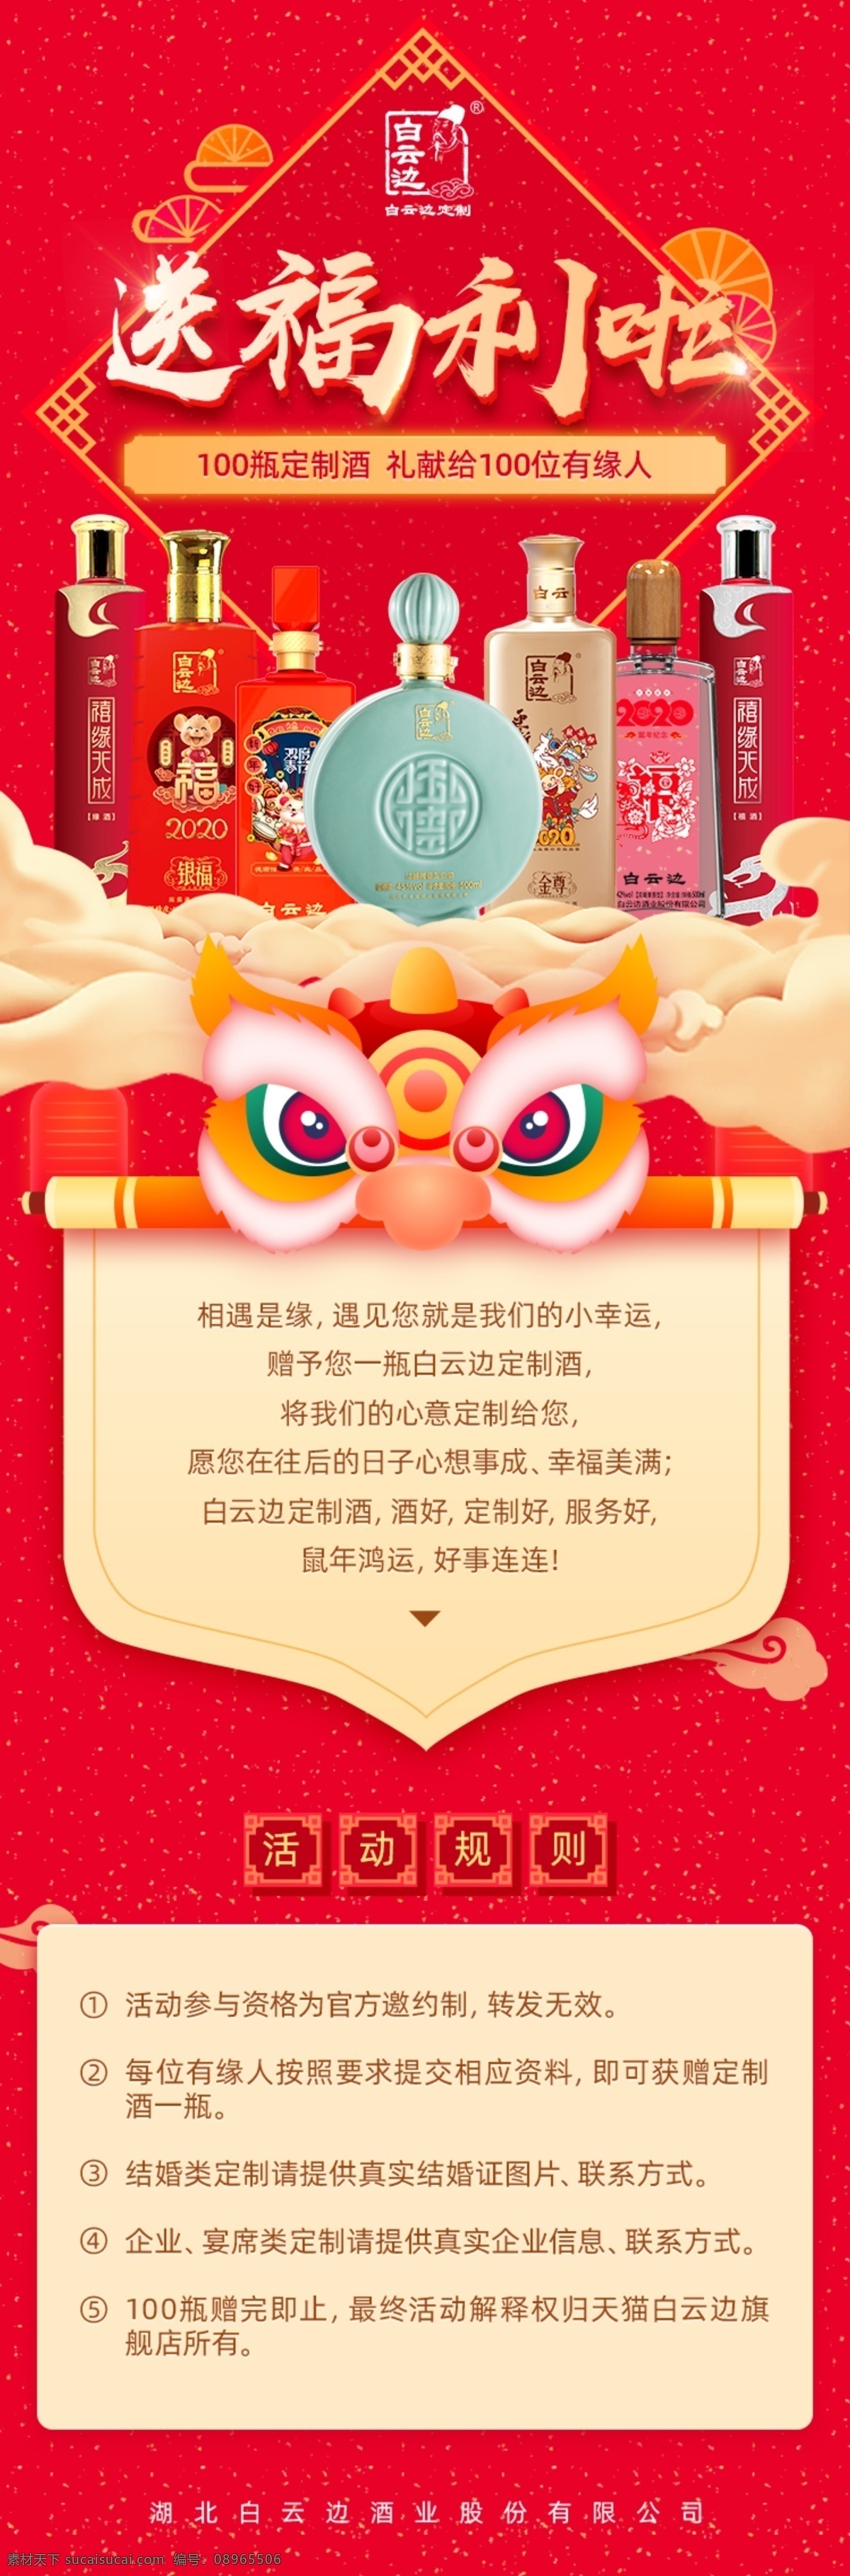 节日 新年 福利 长 图 活动海报 舞狮 狮子 送福利 红色 微博微信 宣传长图 分层